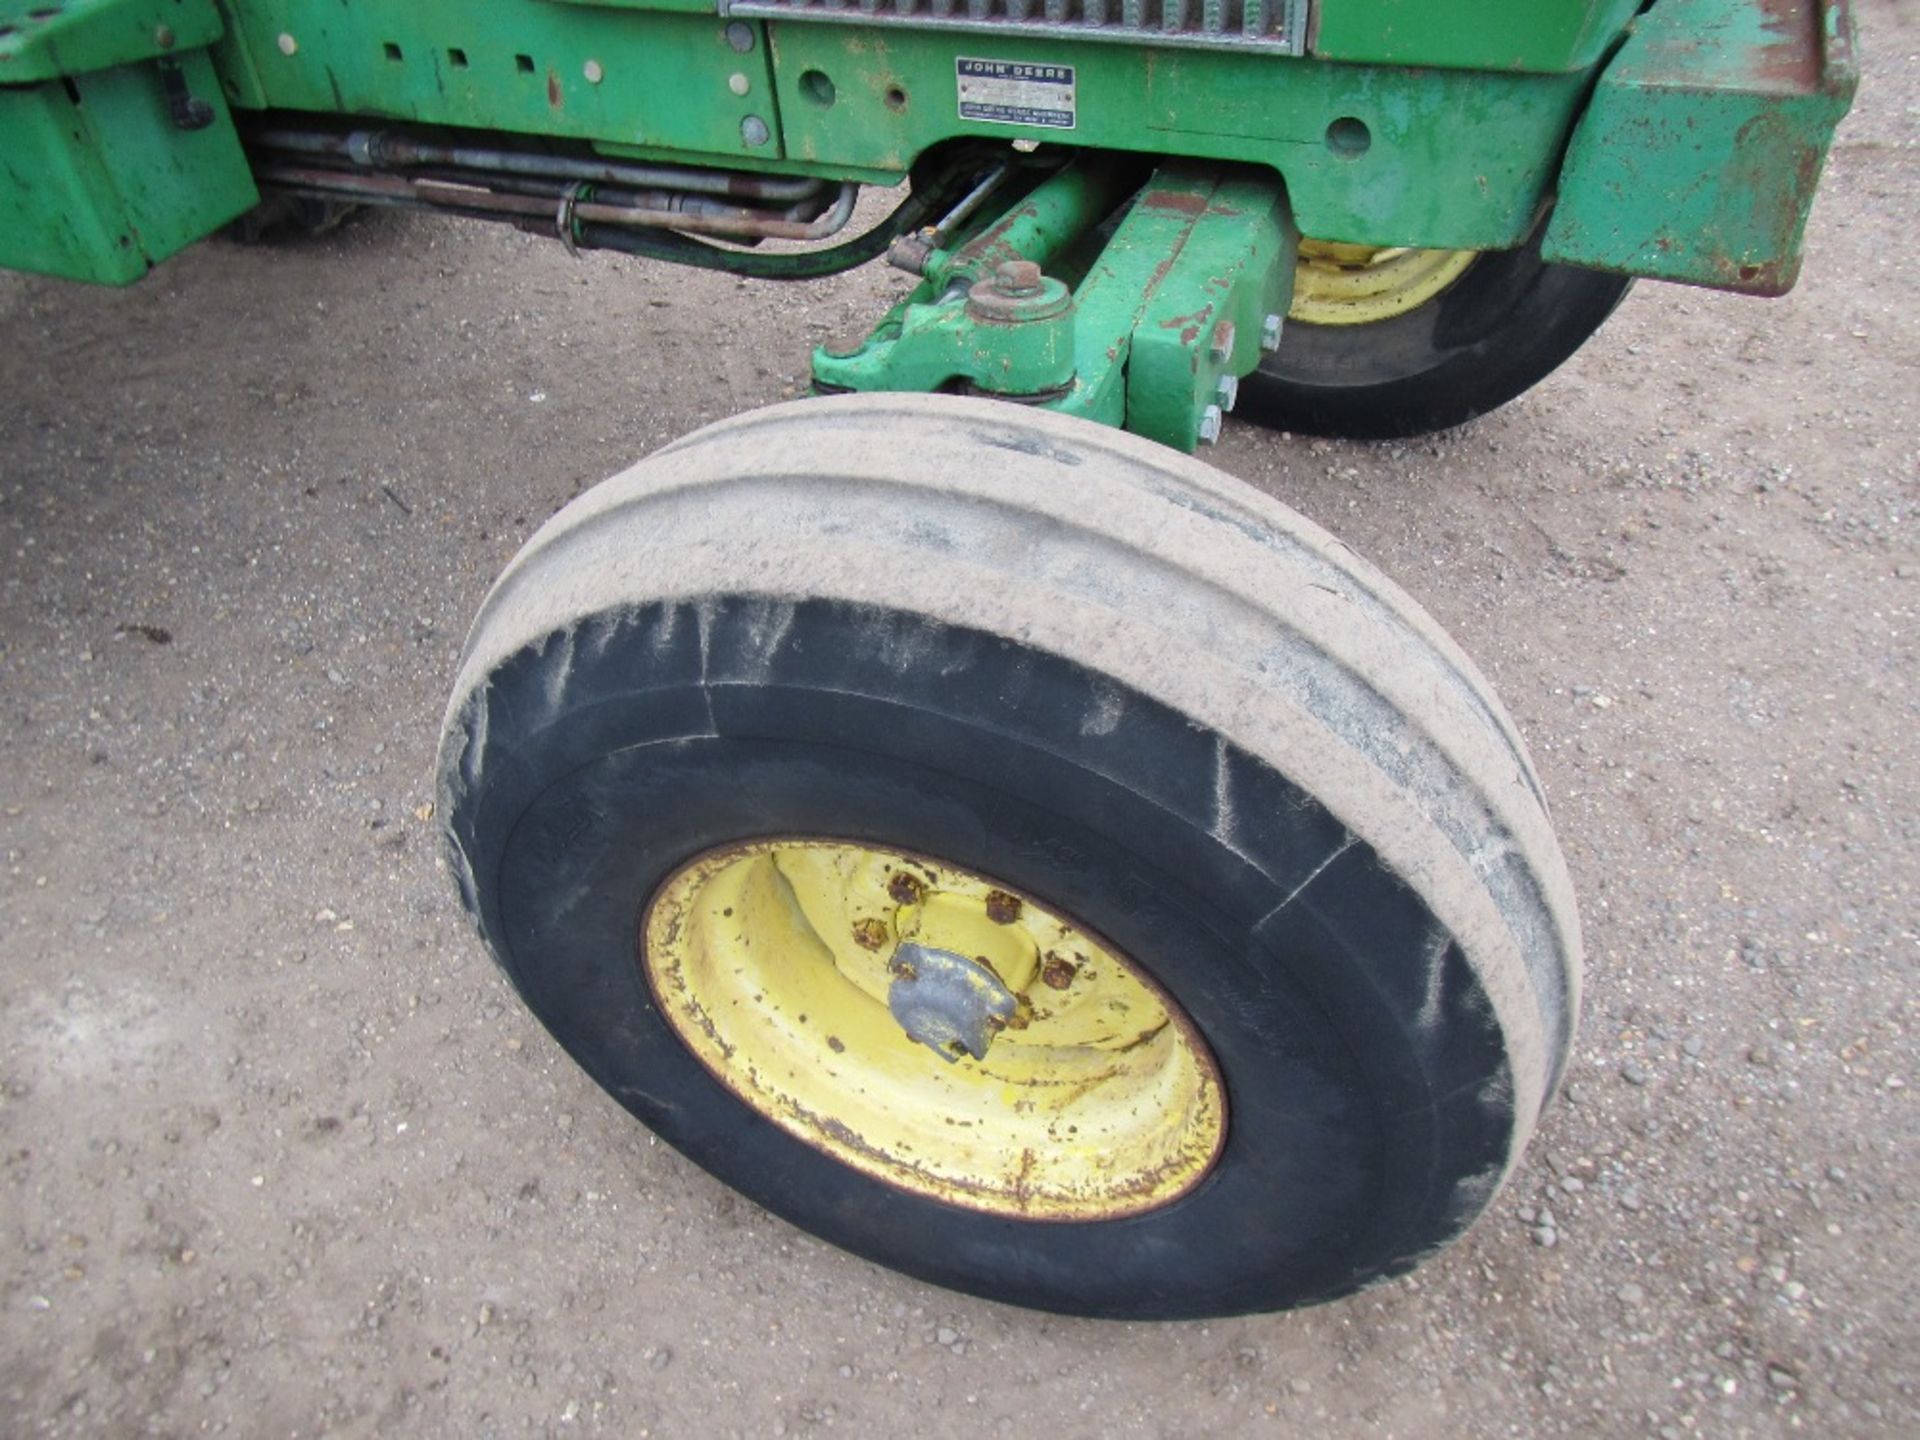 John Deere 2140 2wd Tractor c/w SG2, floor change, 14.9 R38 UNRESERVED LOT - Image 4 of 15